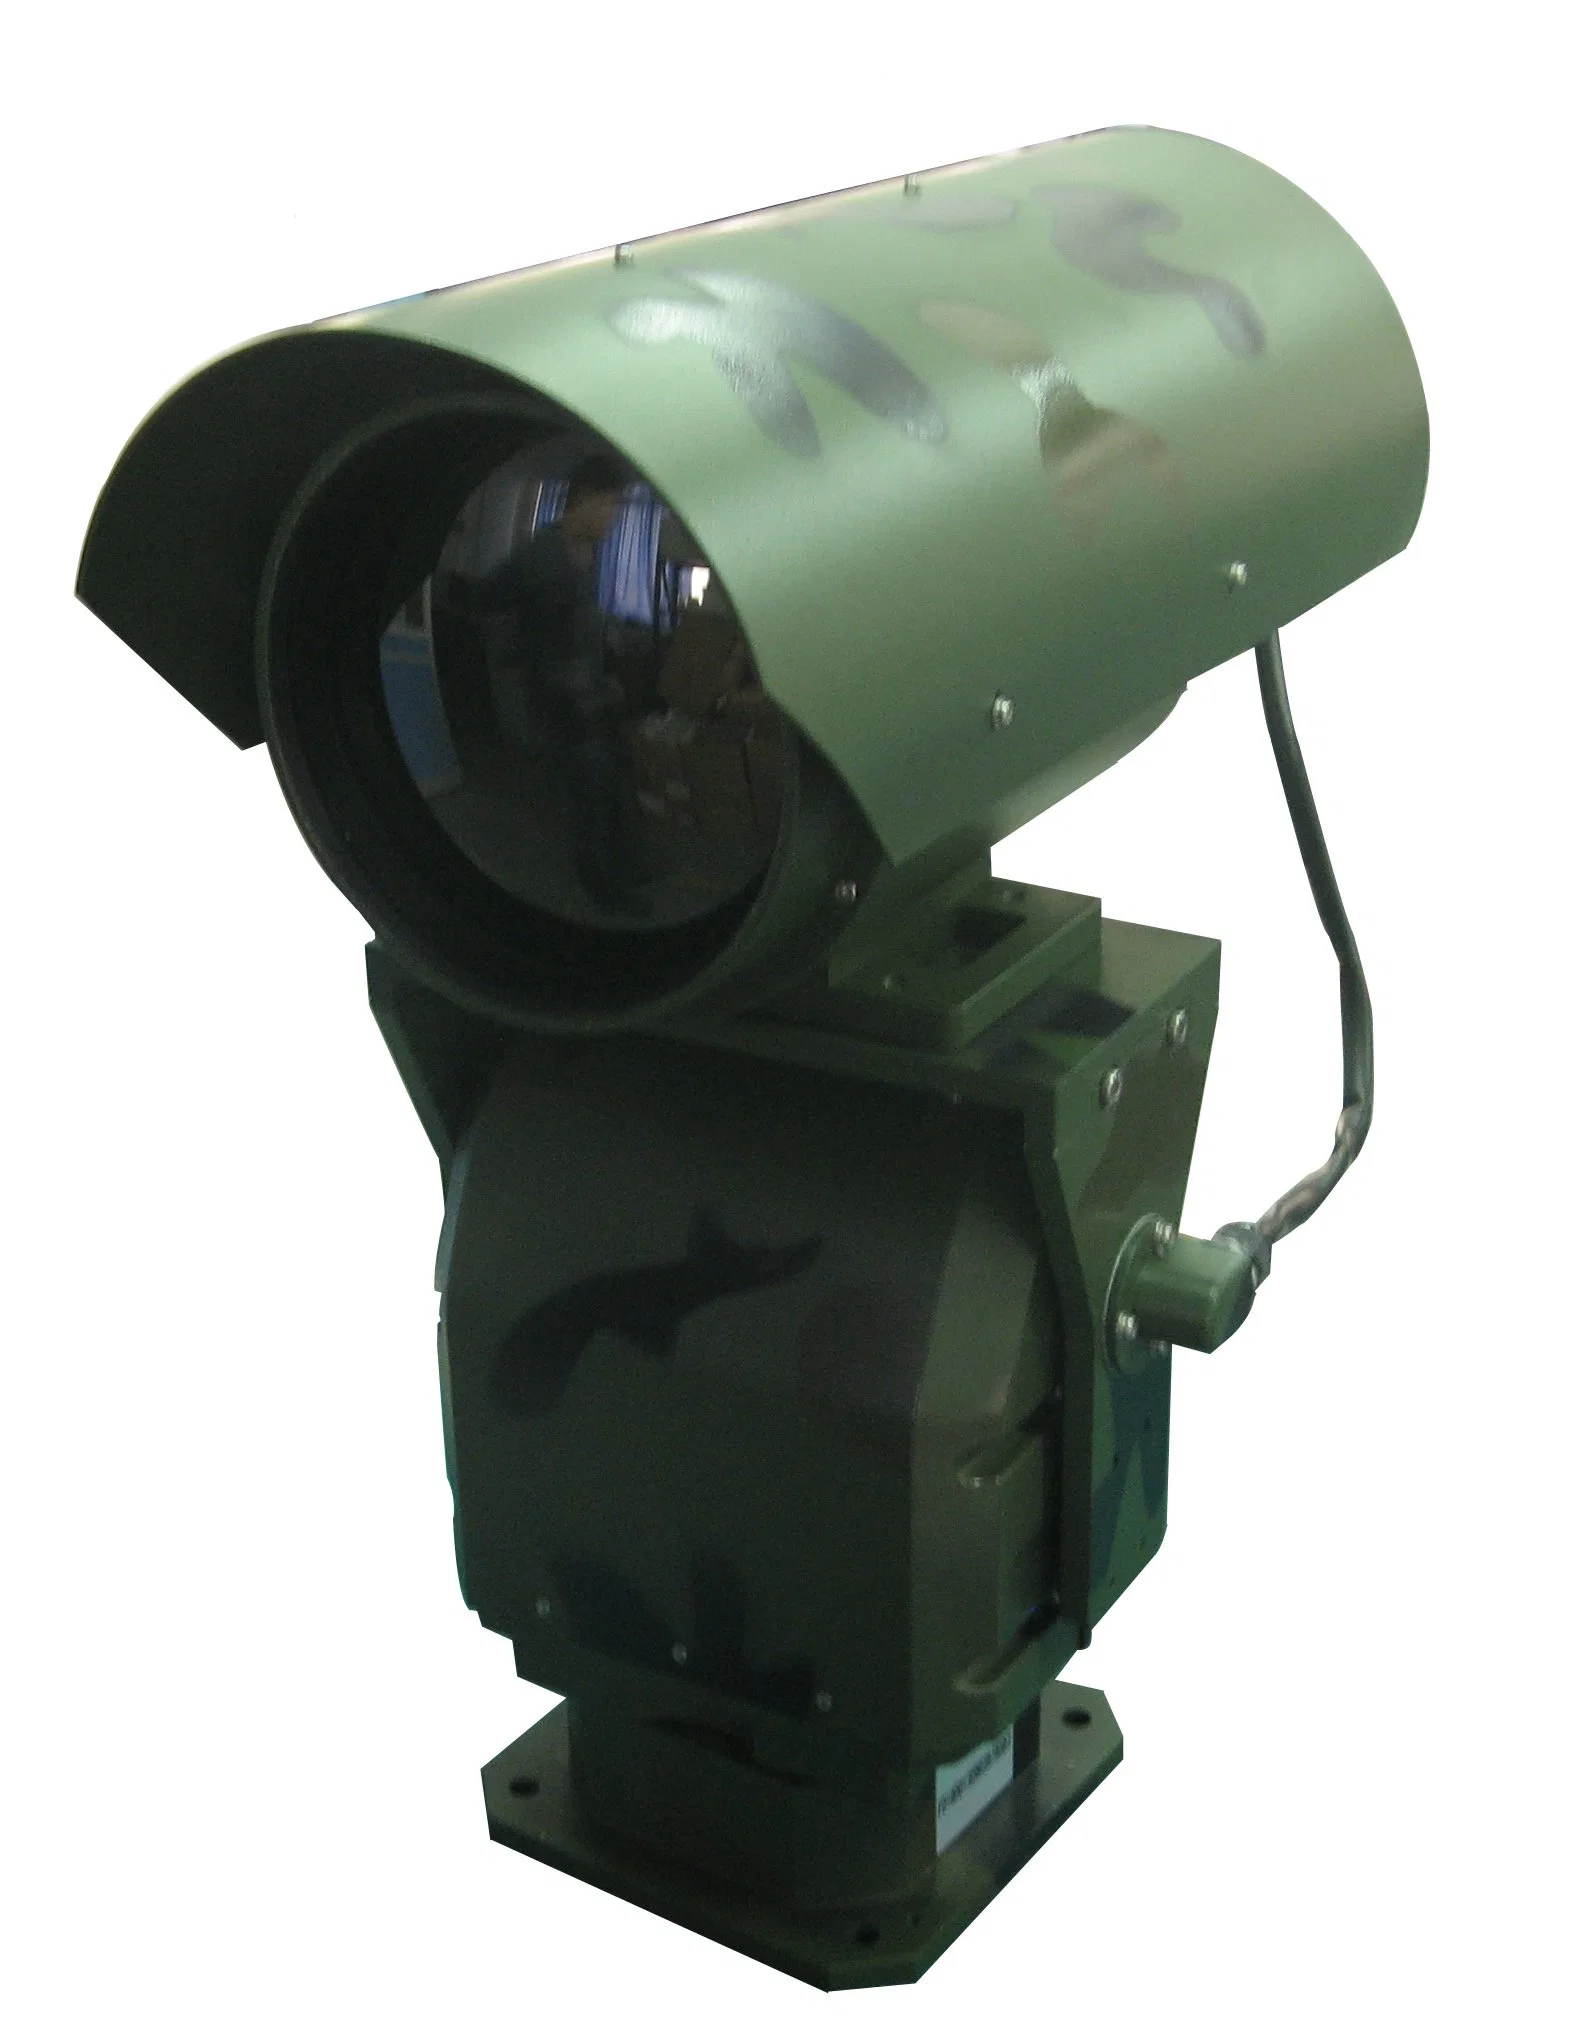 كاميرا حرارية برؤية ليلية بتقنية الأشعة تحت الحمراء والتكبير البصري والتكبير الرقمي على مسافة 10 كيلومترات.